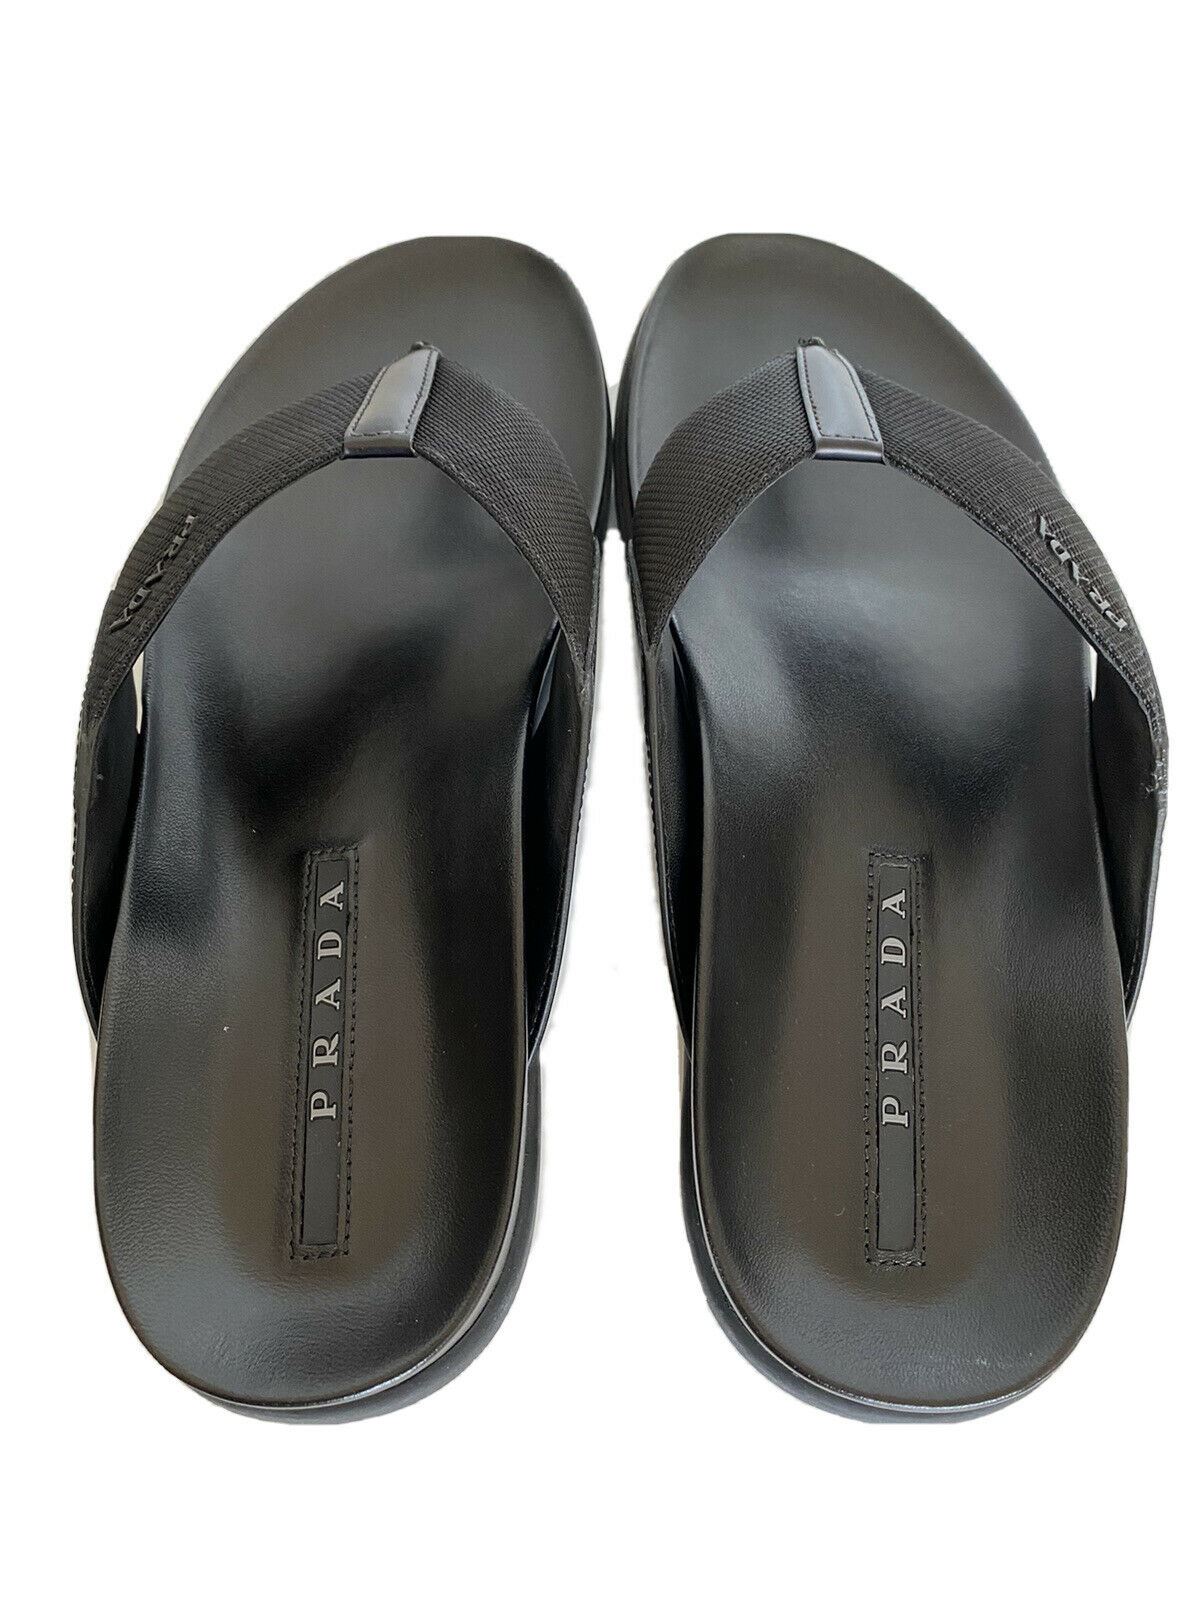 NIB $520 Prada Milano Mens Flip Flop Sandals Shoes Black 7 US 2Y3030 Italy